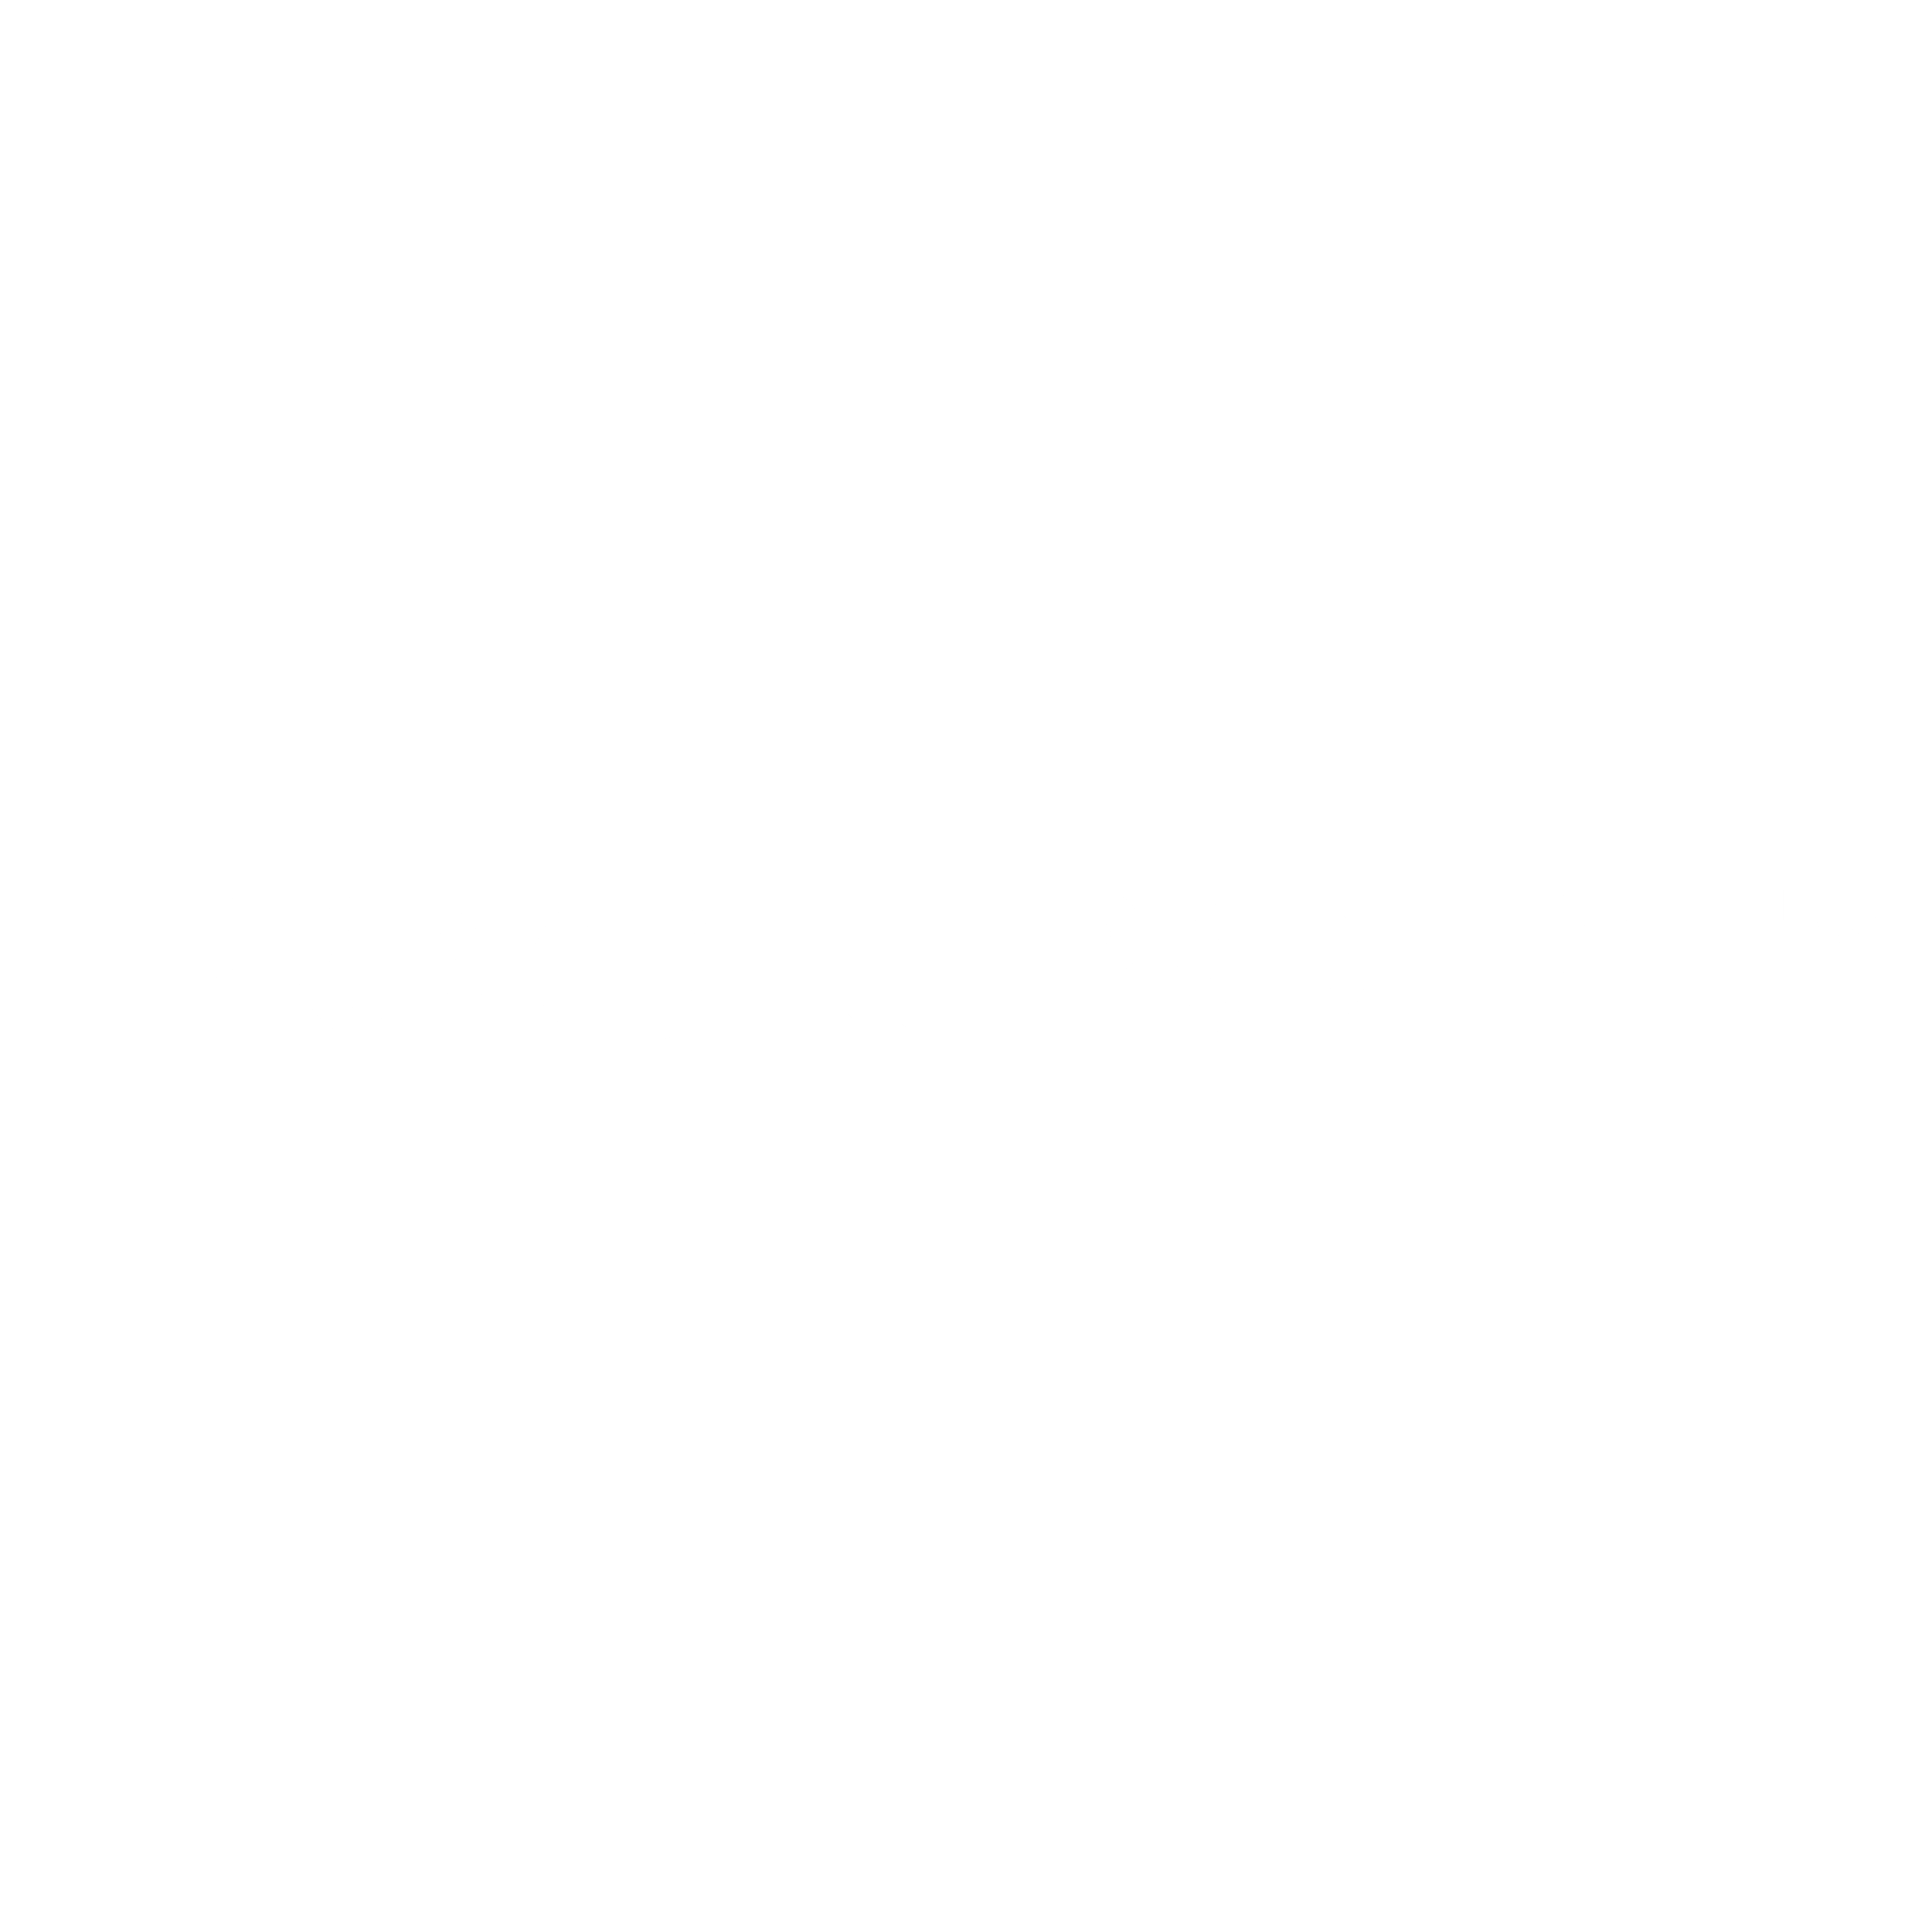 Rockport Logo - Rockport Logo PNG Transparent & SVG Vector - Freebie Supply